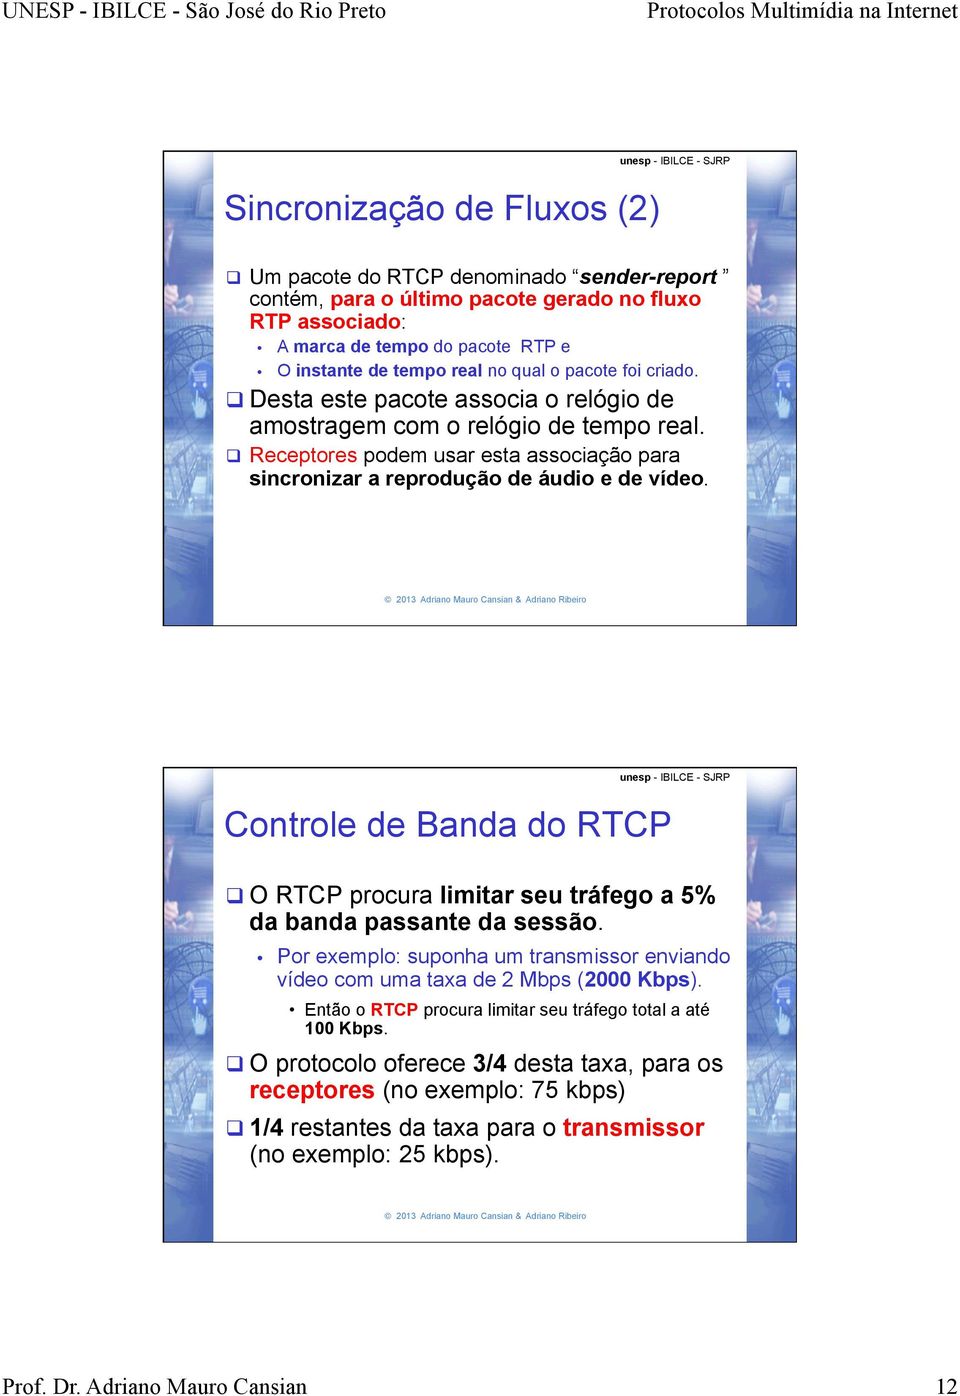 Controle de Banda do RTCP q O RTCP procura limitar seu tráfego a 5% da banda passante da sessão. Por exemplo: suponha um transmissor enviando vídeo com uma taxa de 2 Mbps (2000 Kbps).